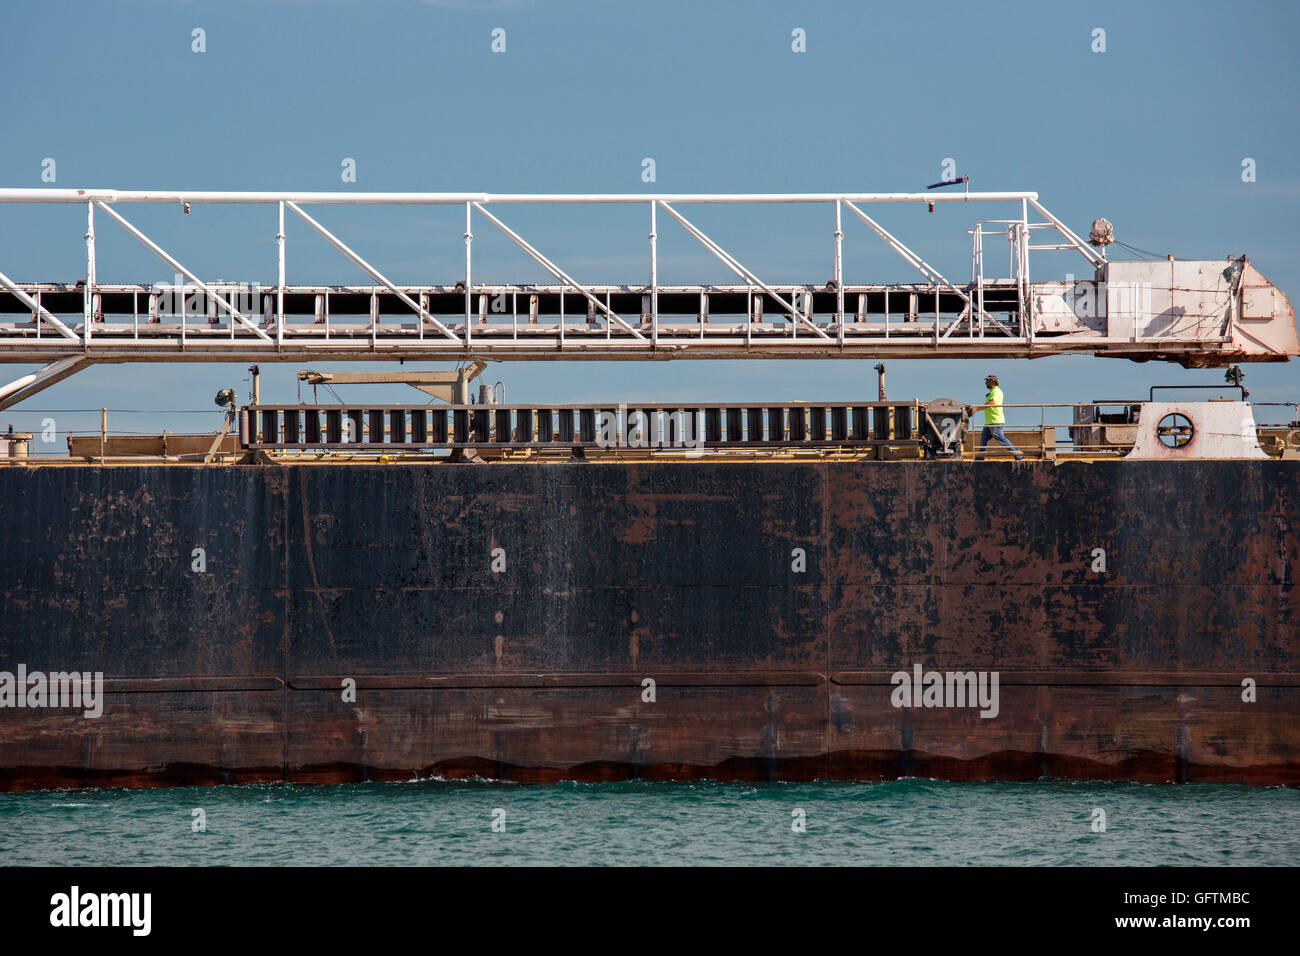 Detroit, Michigan - Un miembro de la tripulación camina sobre la cubierta de la American Mariner granelero navegando en el Río Detroit. Foto de stock